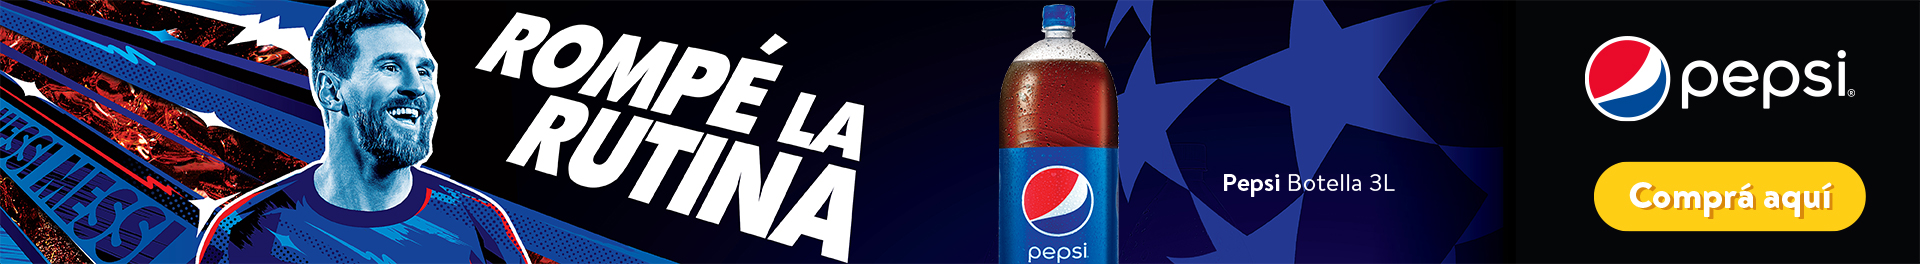 Refrescos Pepsi Variedad